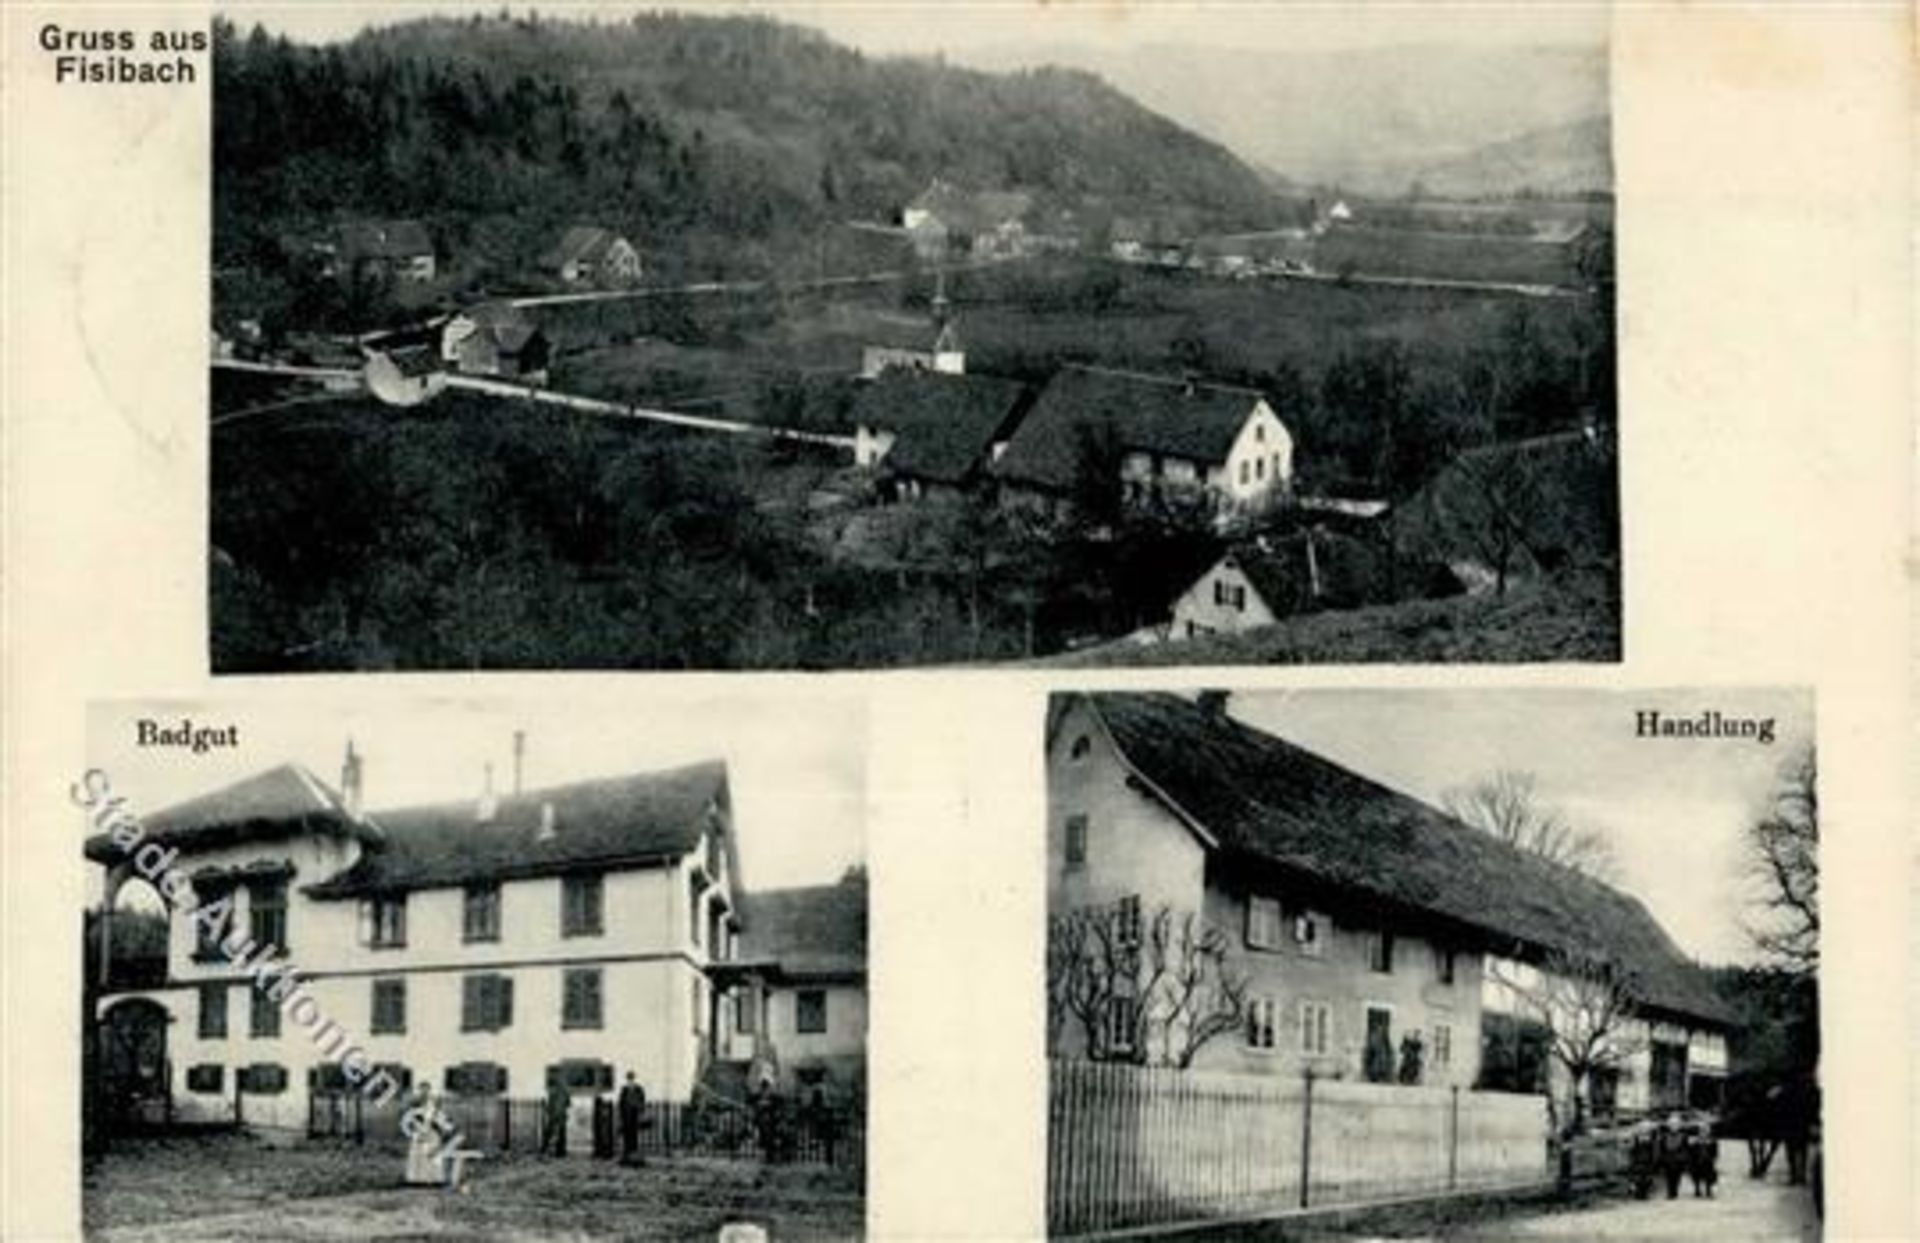 FISIBACH (Aargau) - Badgut + HANDLUNG - Marke entfernt IDieses Los wird in einer online-Auktion ohne